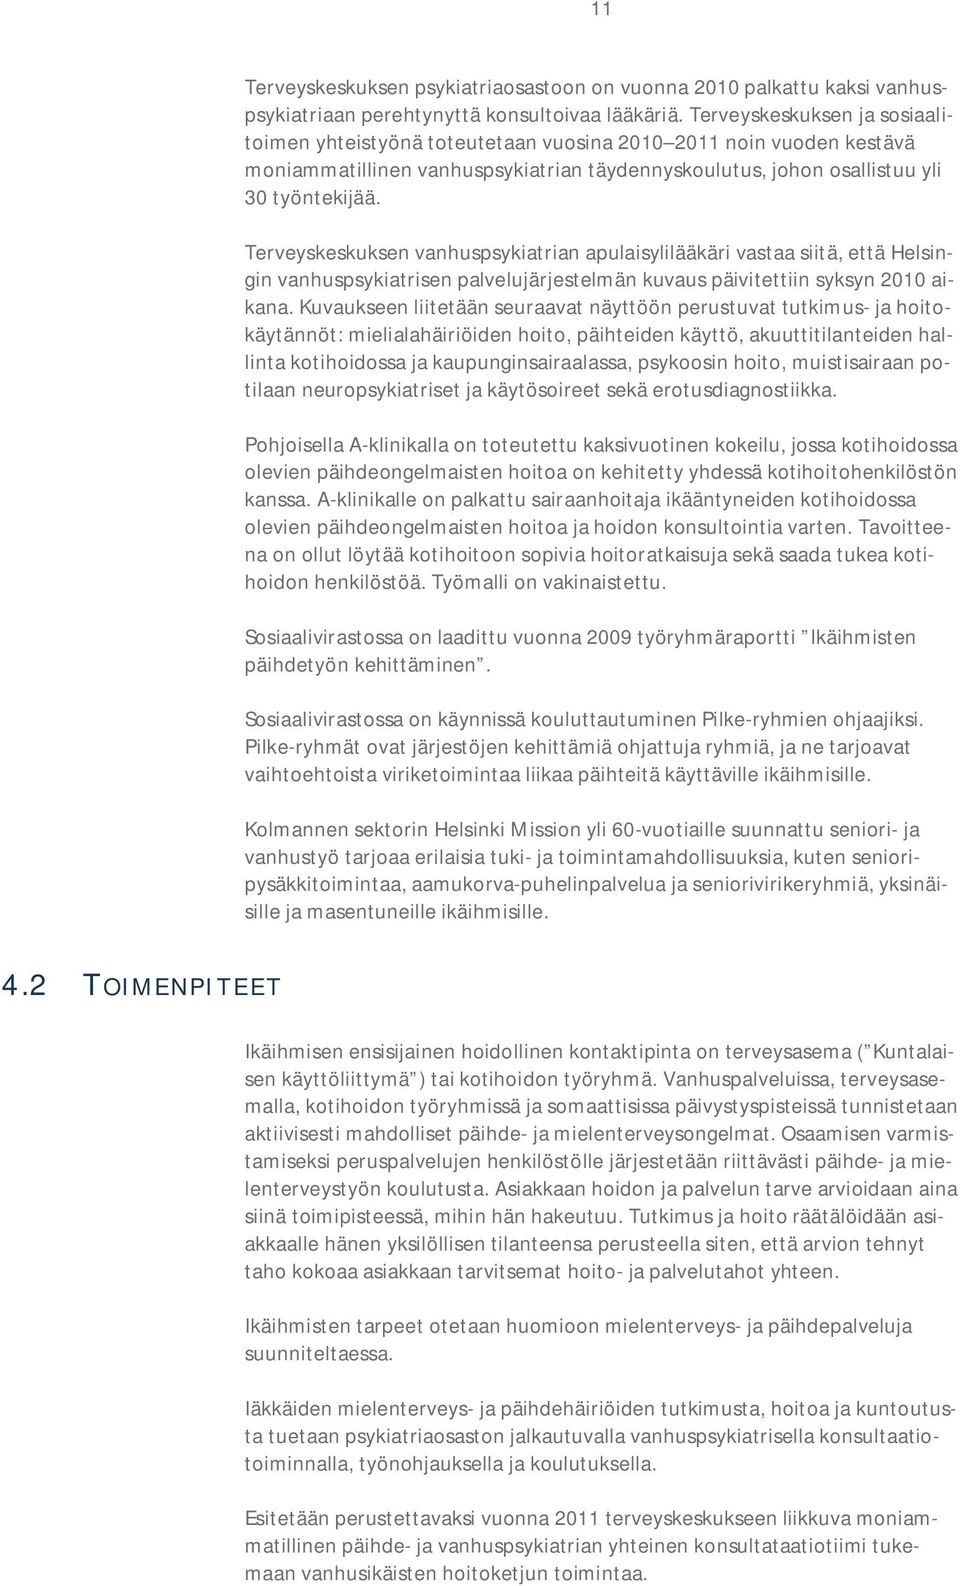 Terveyskeskuksen vanhuspsykiatrian apulaisylilääkäri vastaa siitä, että Helsingin vanhuspsykiatrisen palvelujärjestelmän kuvaus päivitettiin syksyn 2010 aikana.